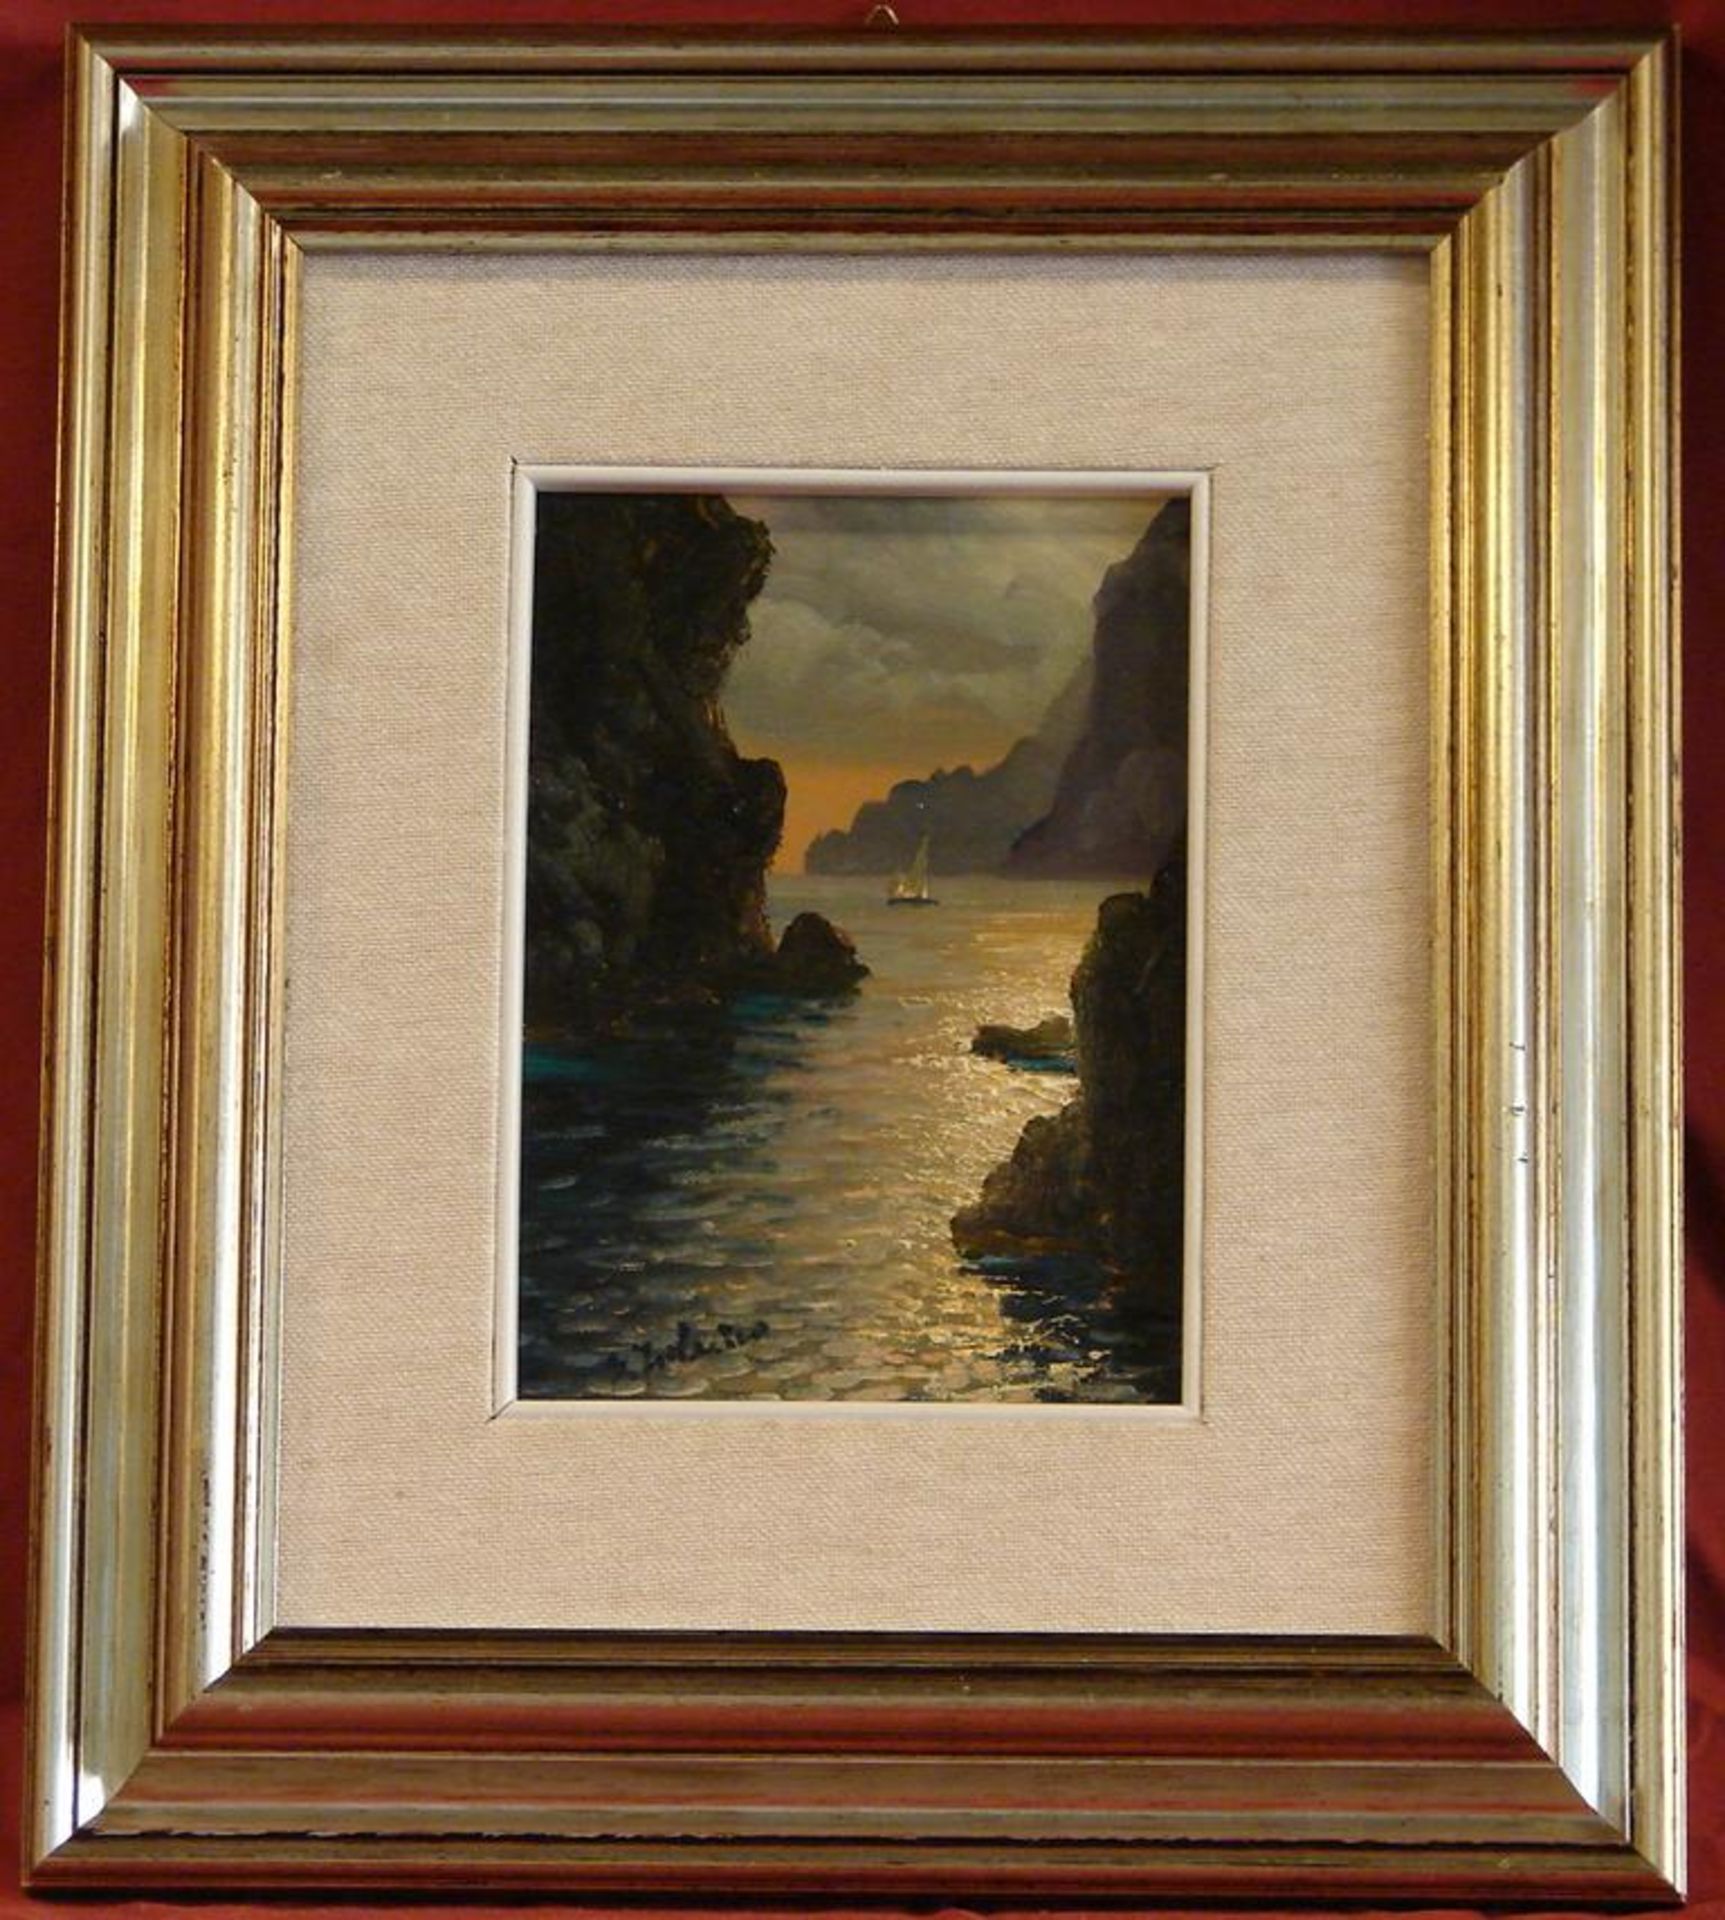 SALVATORE FEDERICO, " Bucht von Capri", ÖL/L., unten links signiert, ca. 12 x 17 cm, neuzeitlich